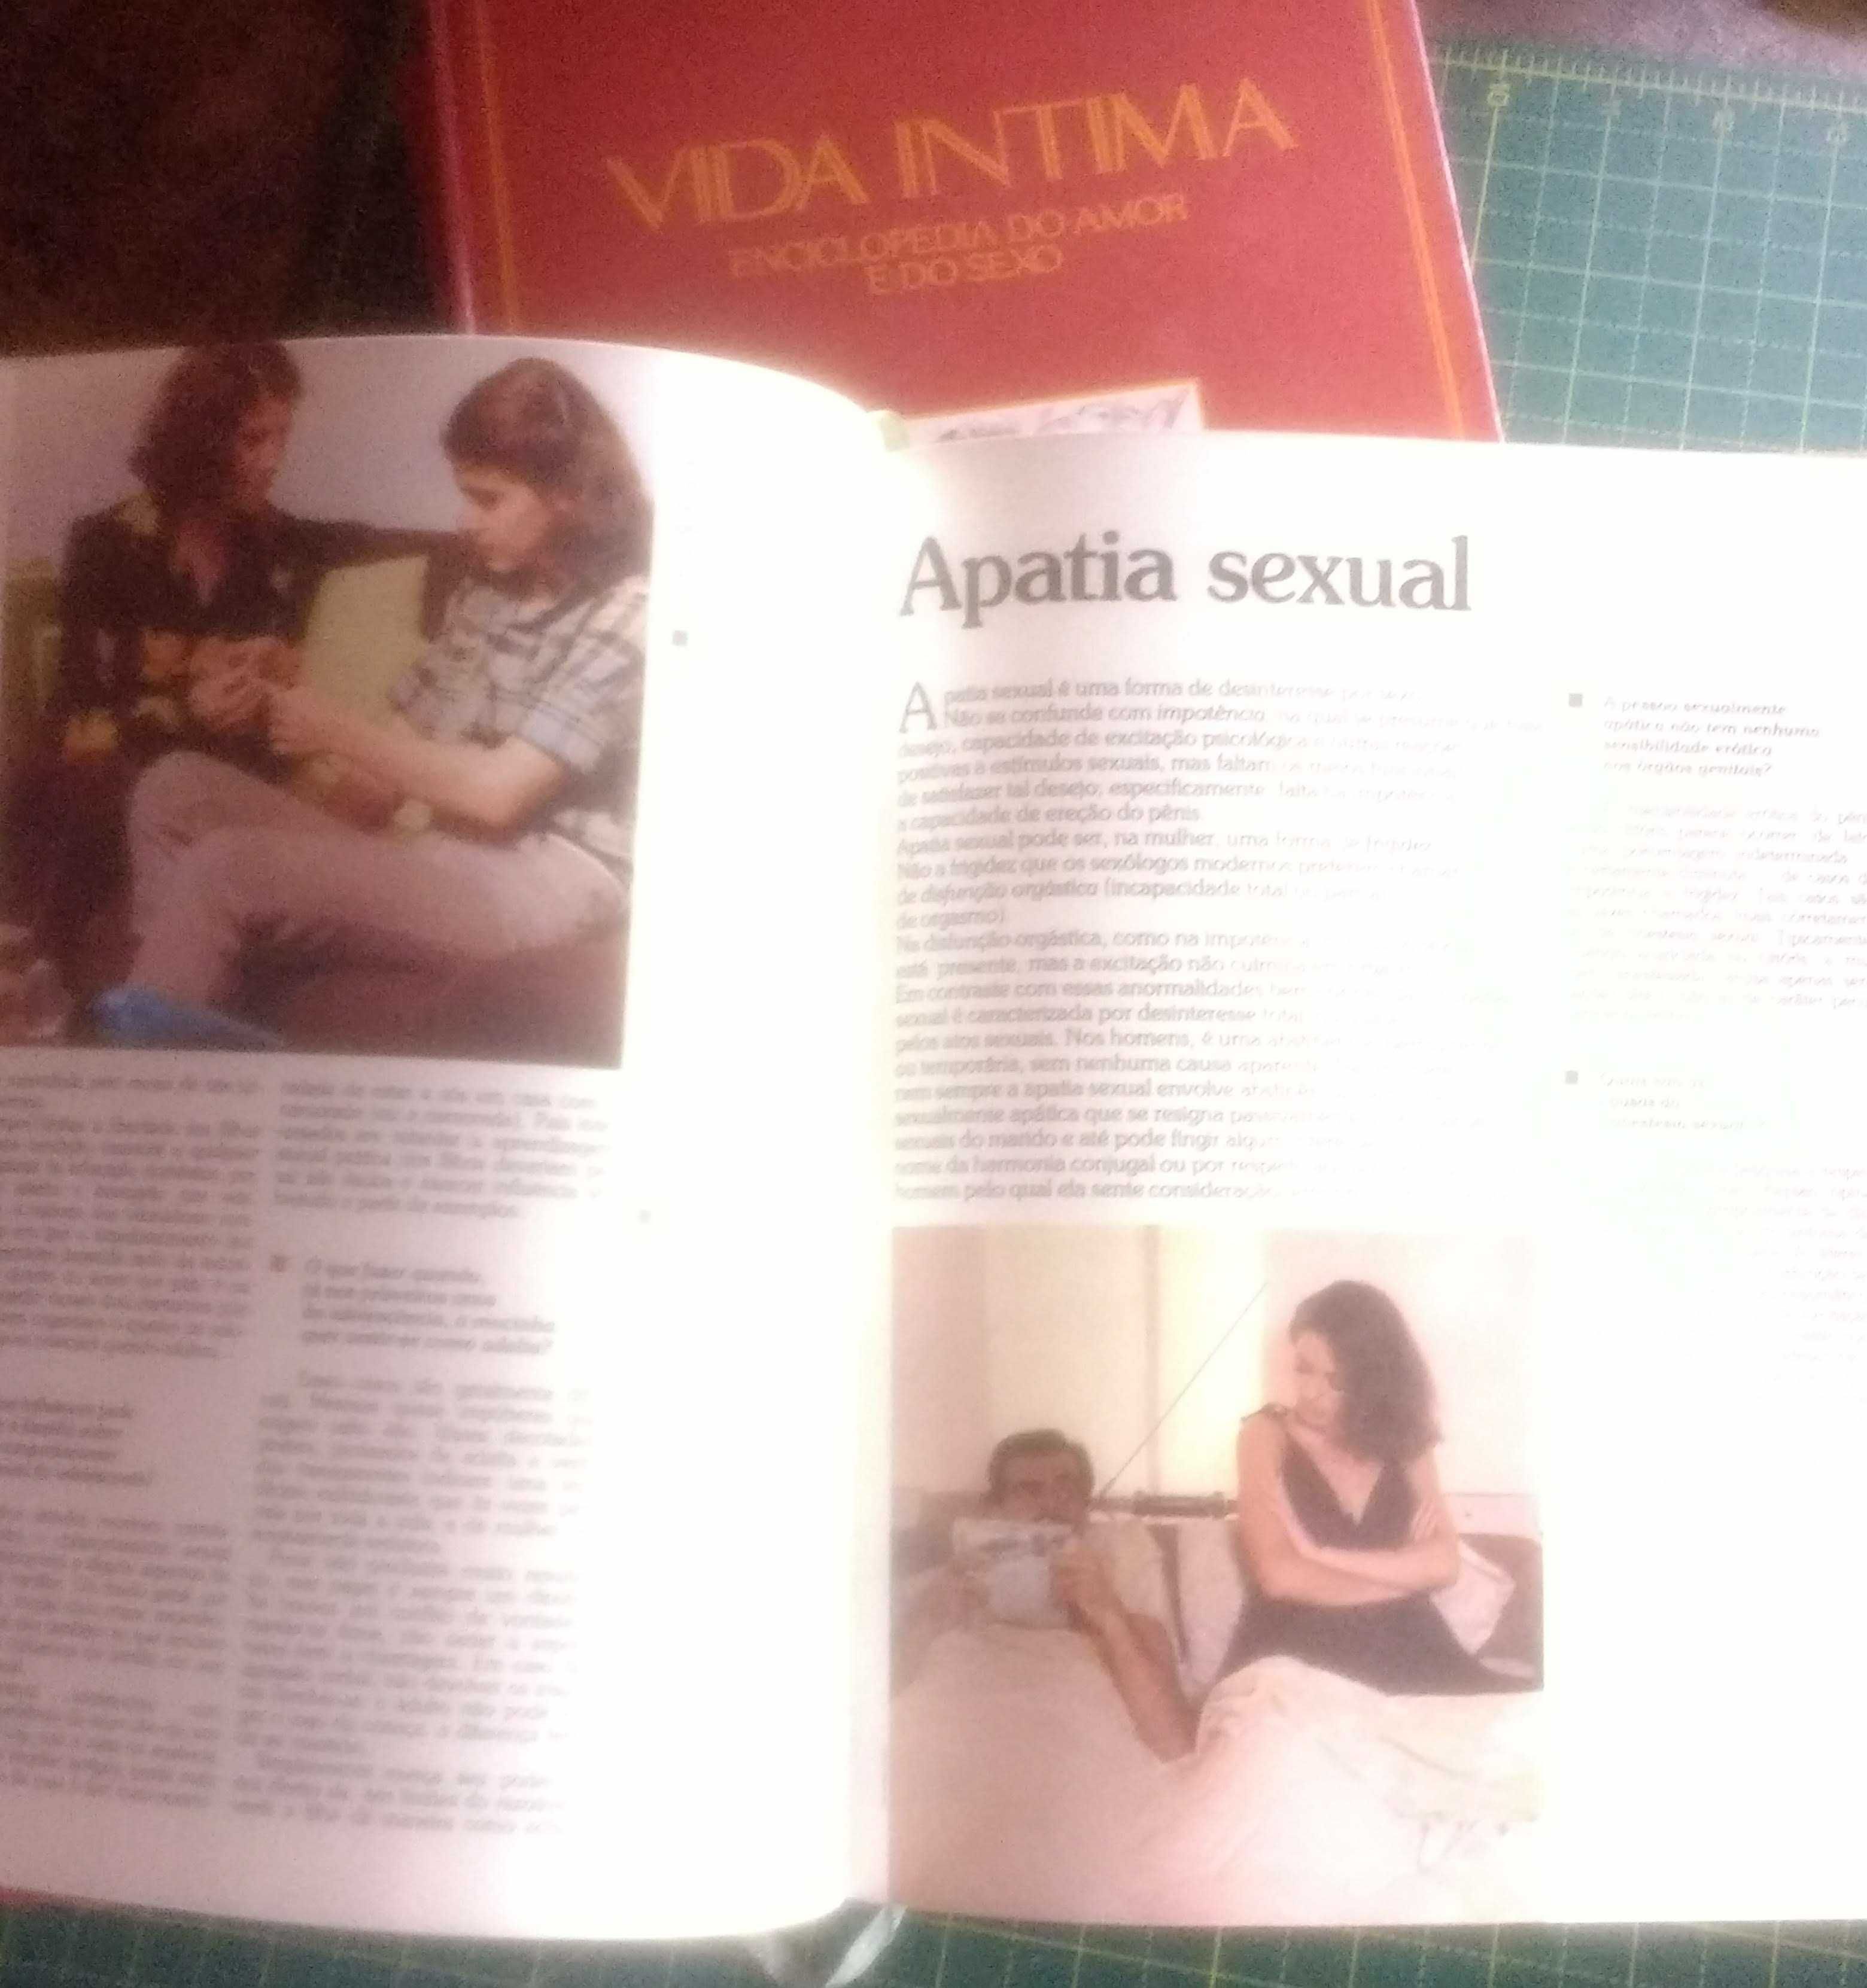 VIDA ÍNTIMA - A enciclopédia do amor e do sexo - 3 Vols